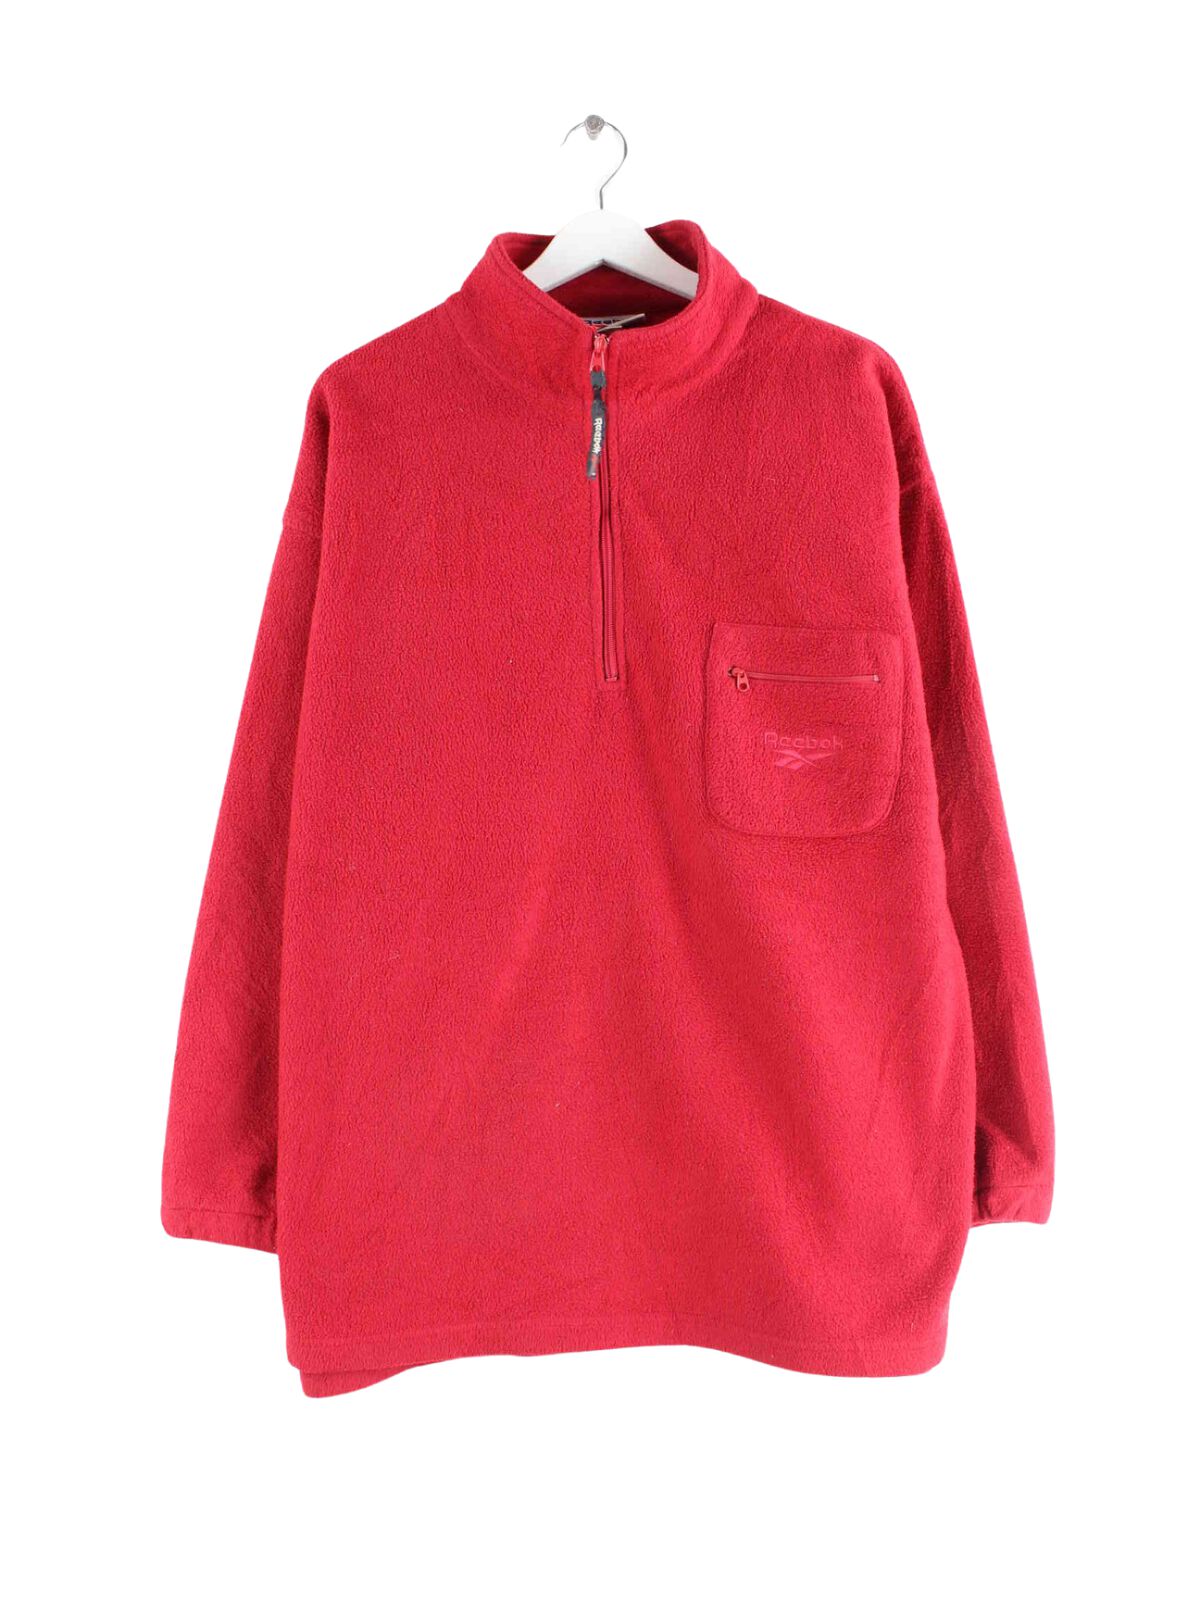 Reebok 90s Vintage Fleece Half Zip Sweater Rot L (front image)